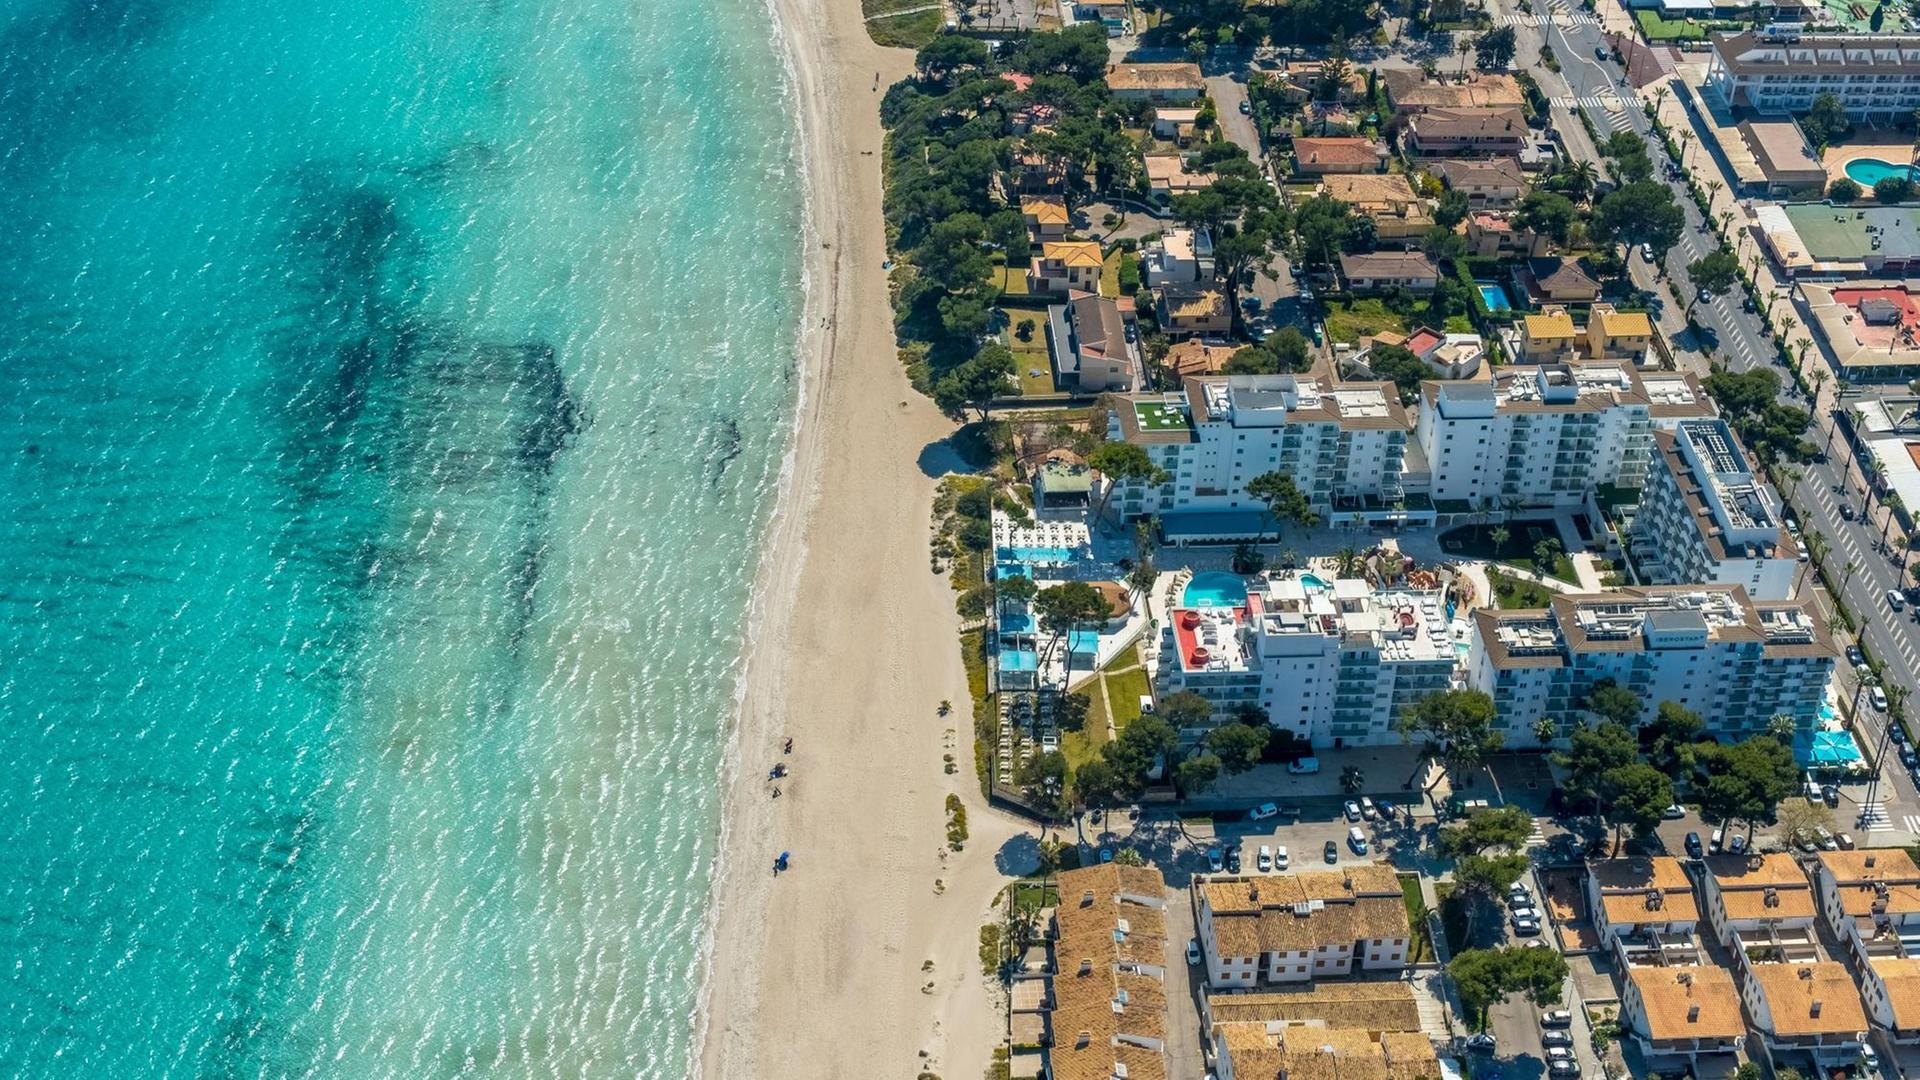 Luftaufnahme vom Strand von Alcúdia mit angrenzenden Hotelanlagen.